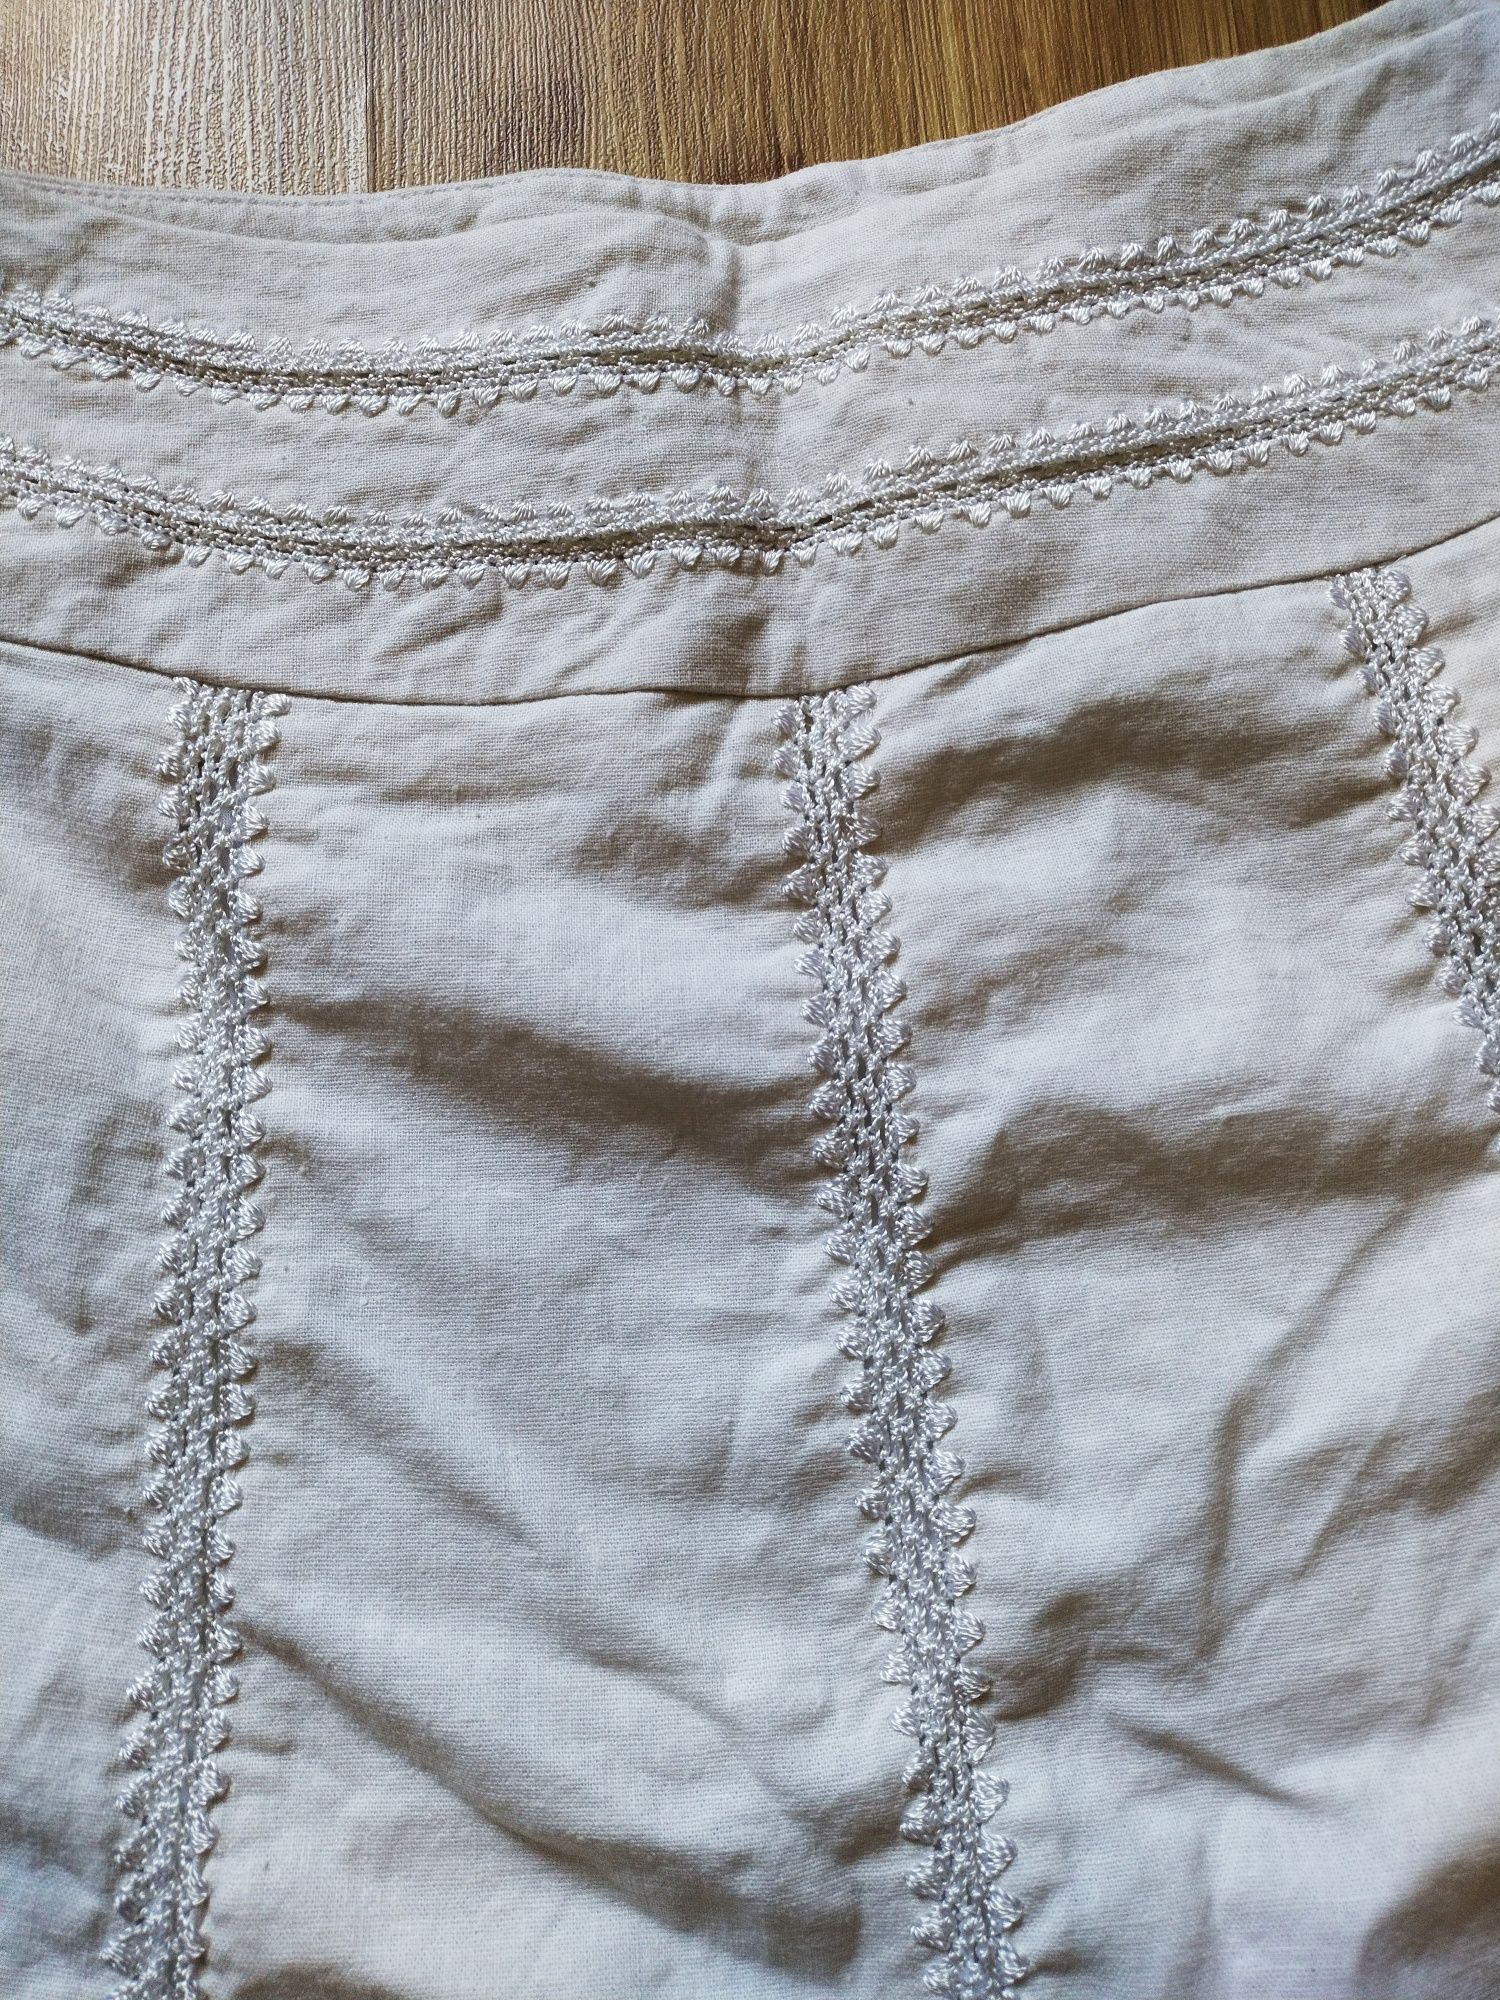 Женская вышиванка рубашка блуза юбка українська вишиванка